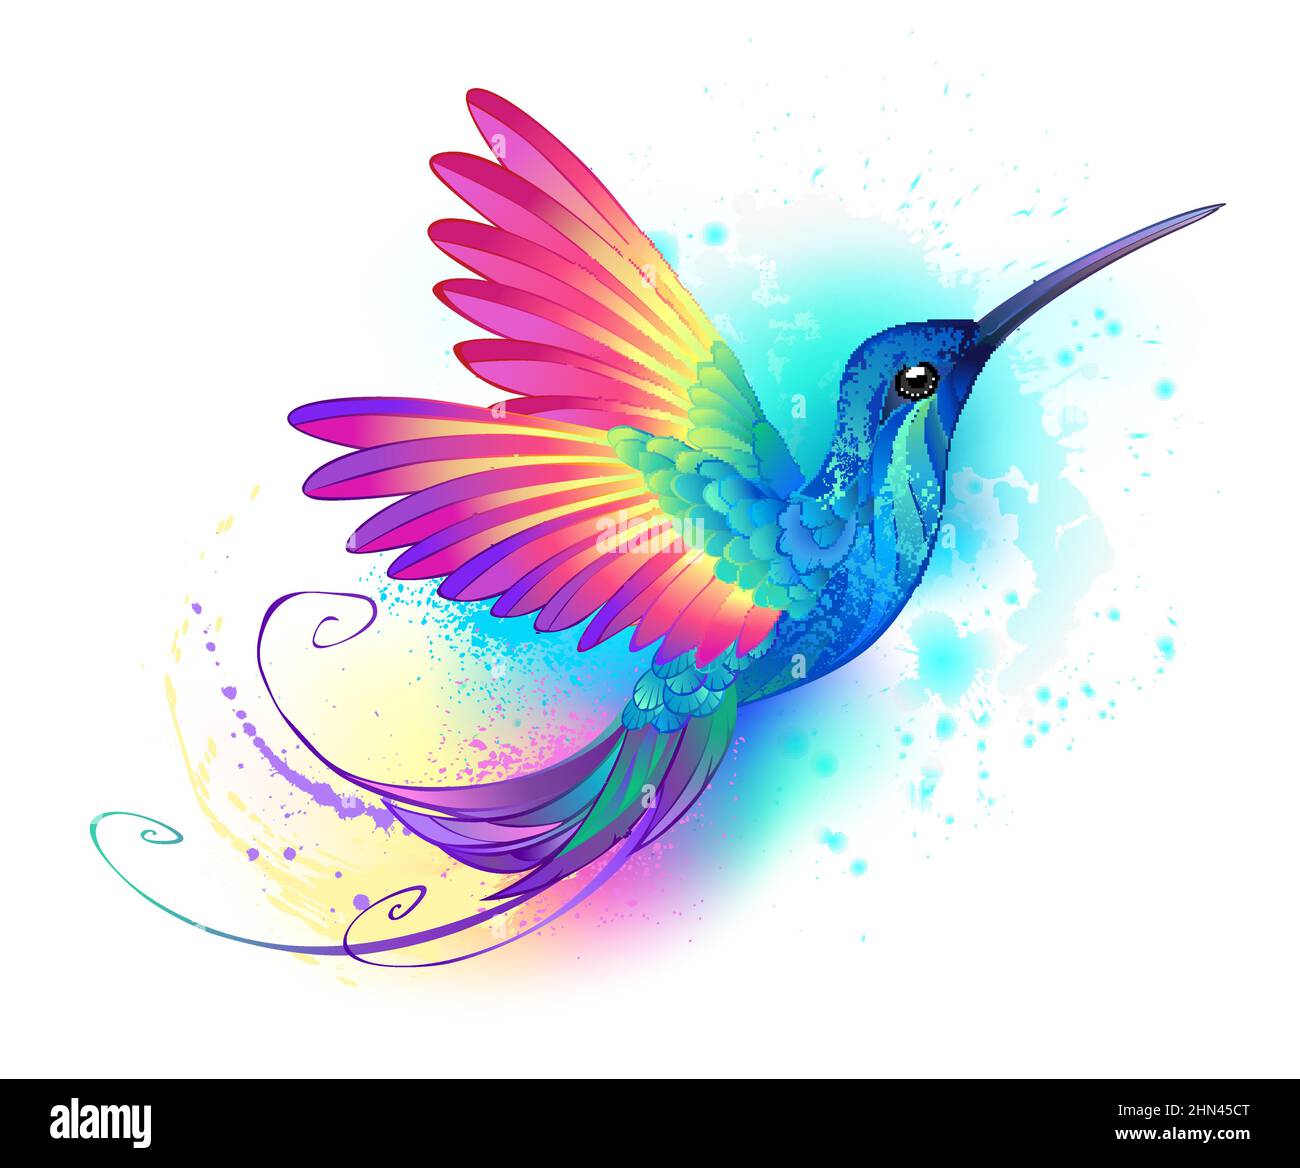 Heller, irisierender, exotischer fliegender Kolibri auf weißem Hintergrund, übermalt mit mehrfarbiger Aquarellfarbe. Regenbogenkolibri. Stock Vektor